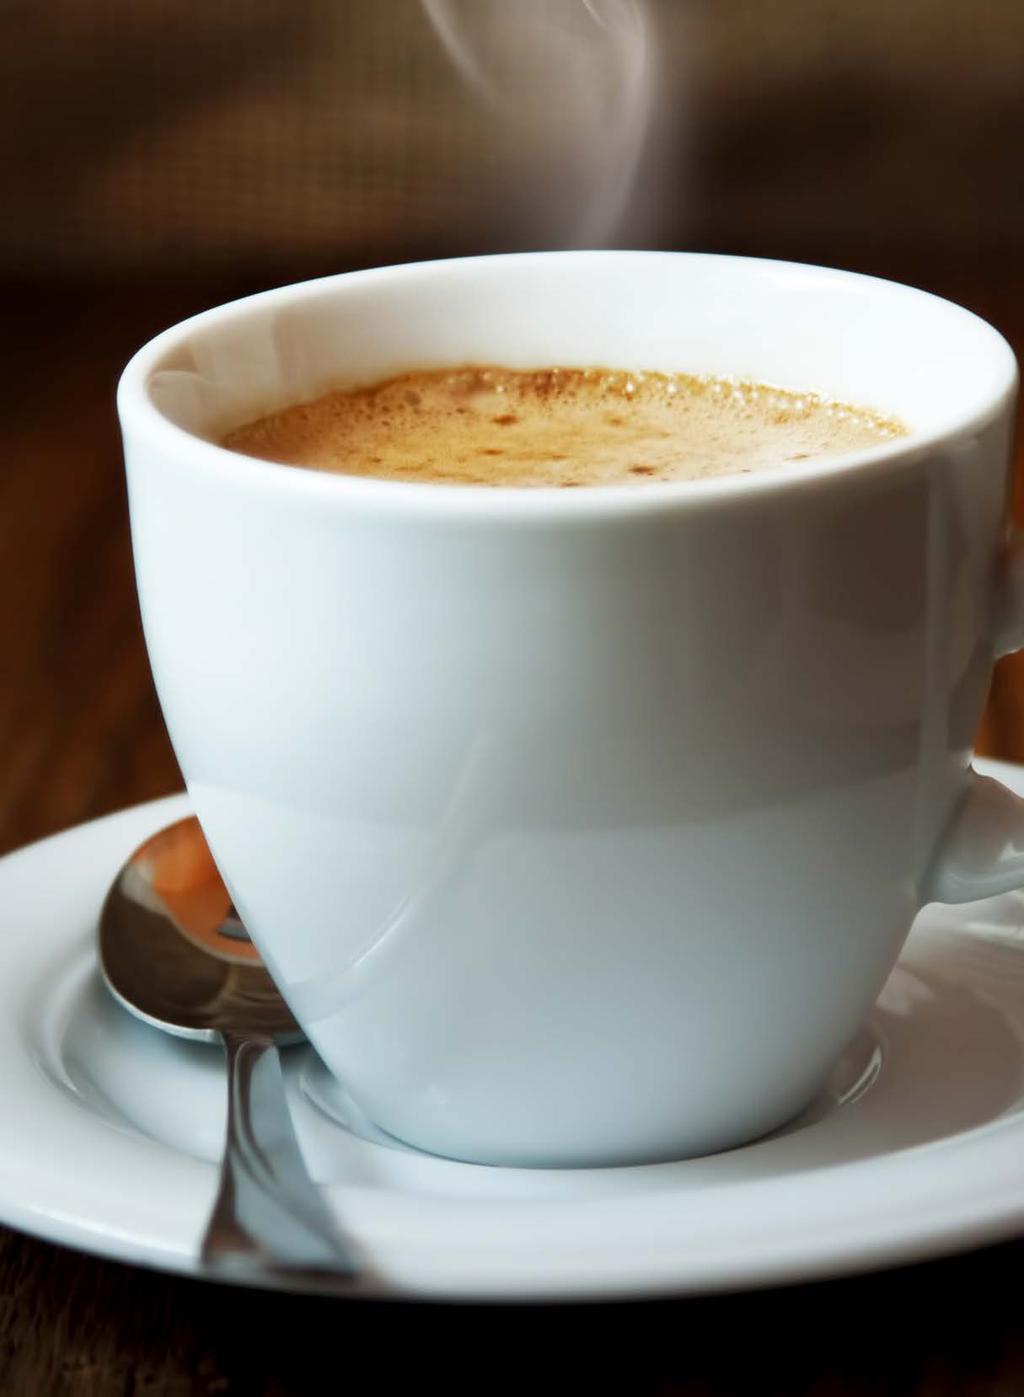 ίλτρου Η Douwe Egberts, με παράδοση 250 ετών στον καφέ, καινοτομεί με το σύστημα Καφές φίλτρου παρασκευής καφέ Cafitesse.